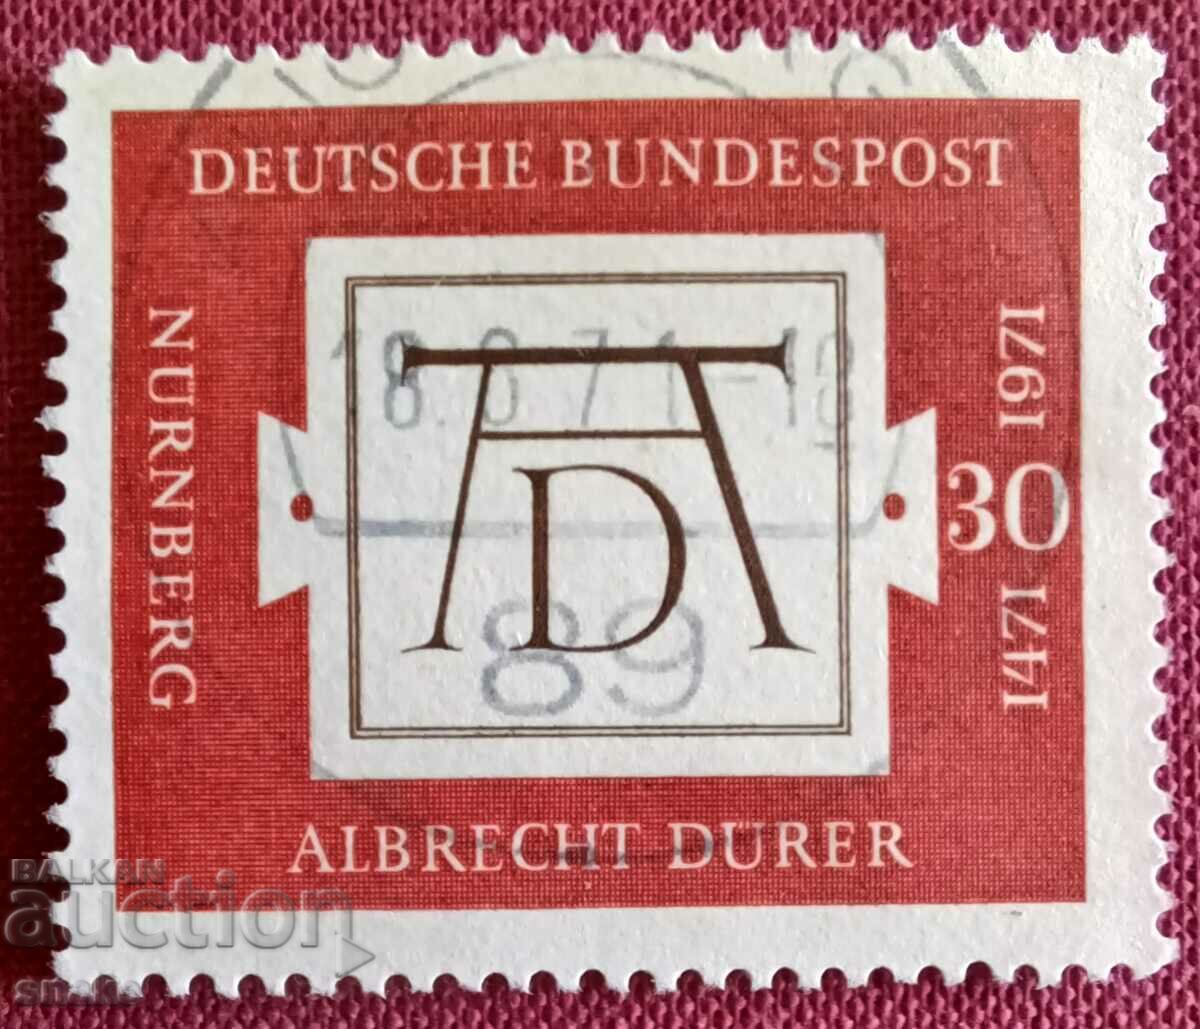 Γερμανία 1971 Άλμπρεχτ Ντύρερ